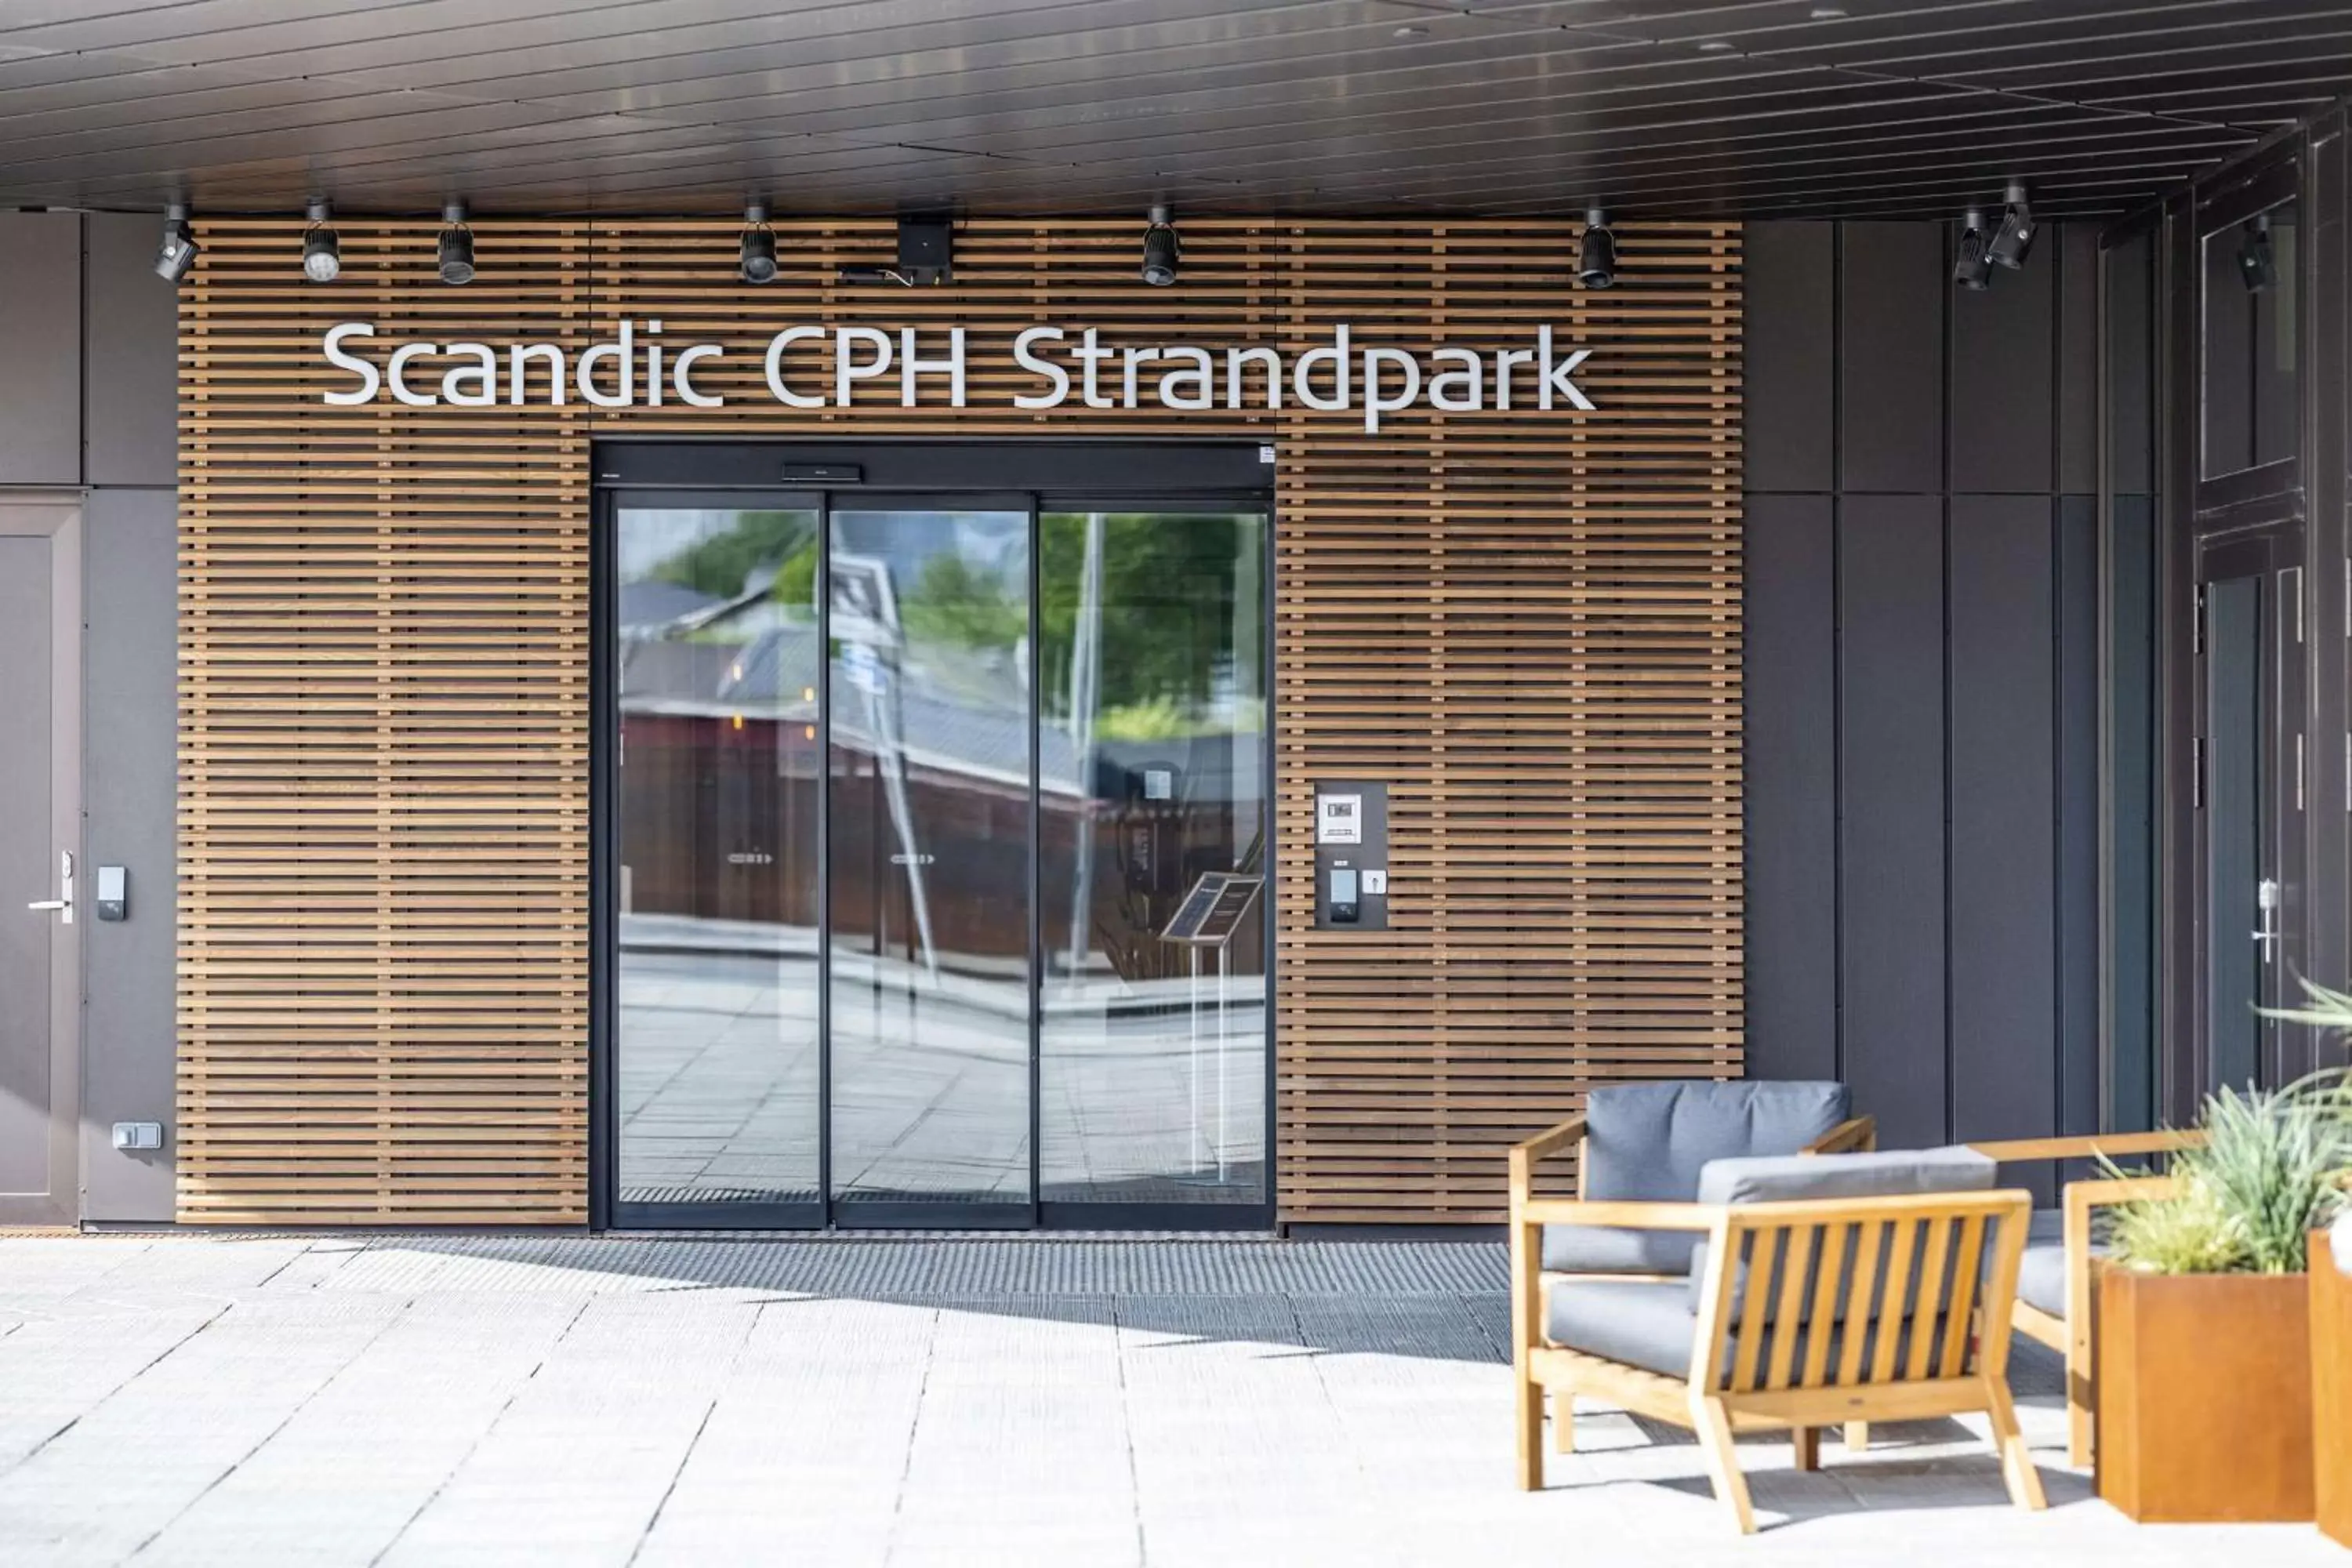 Property building in Scandic CPH Strandpark